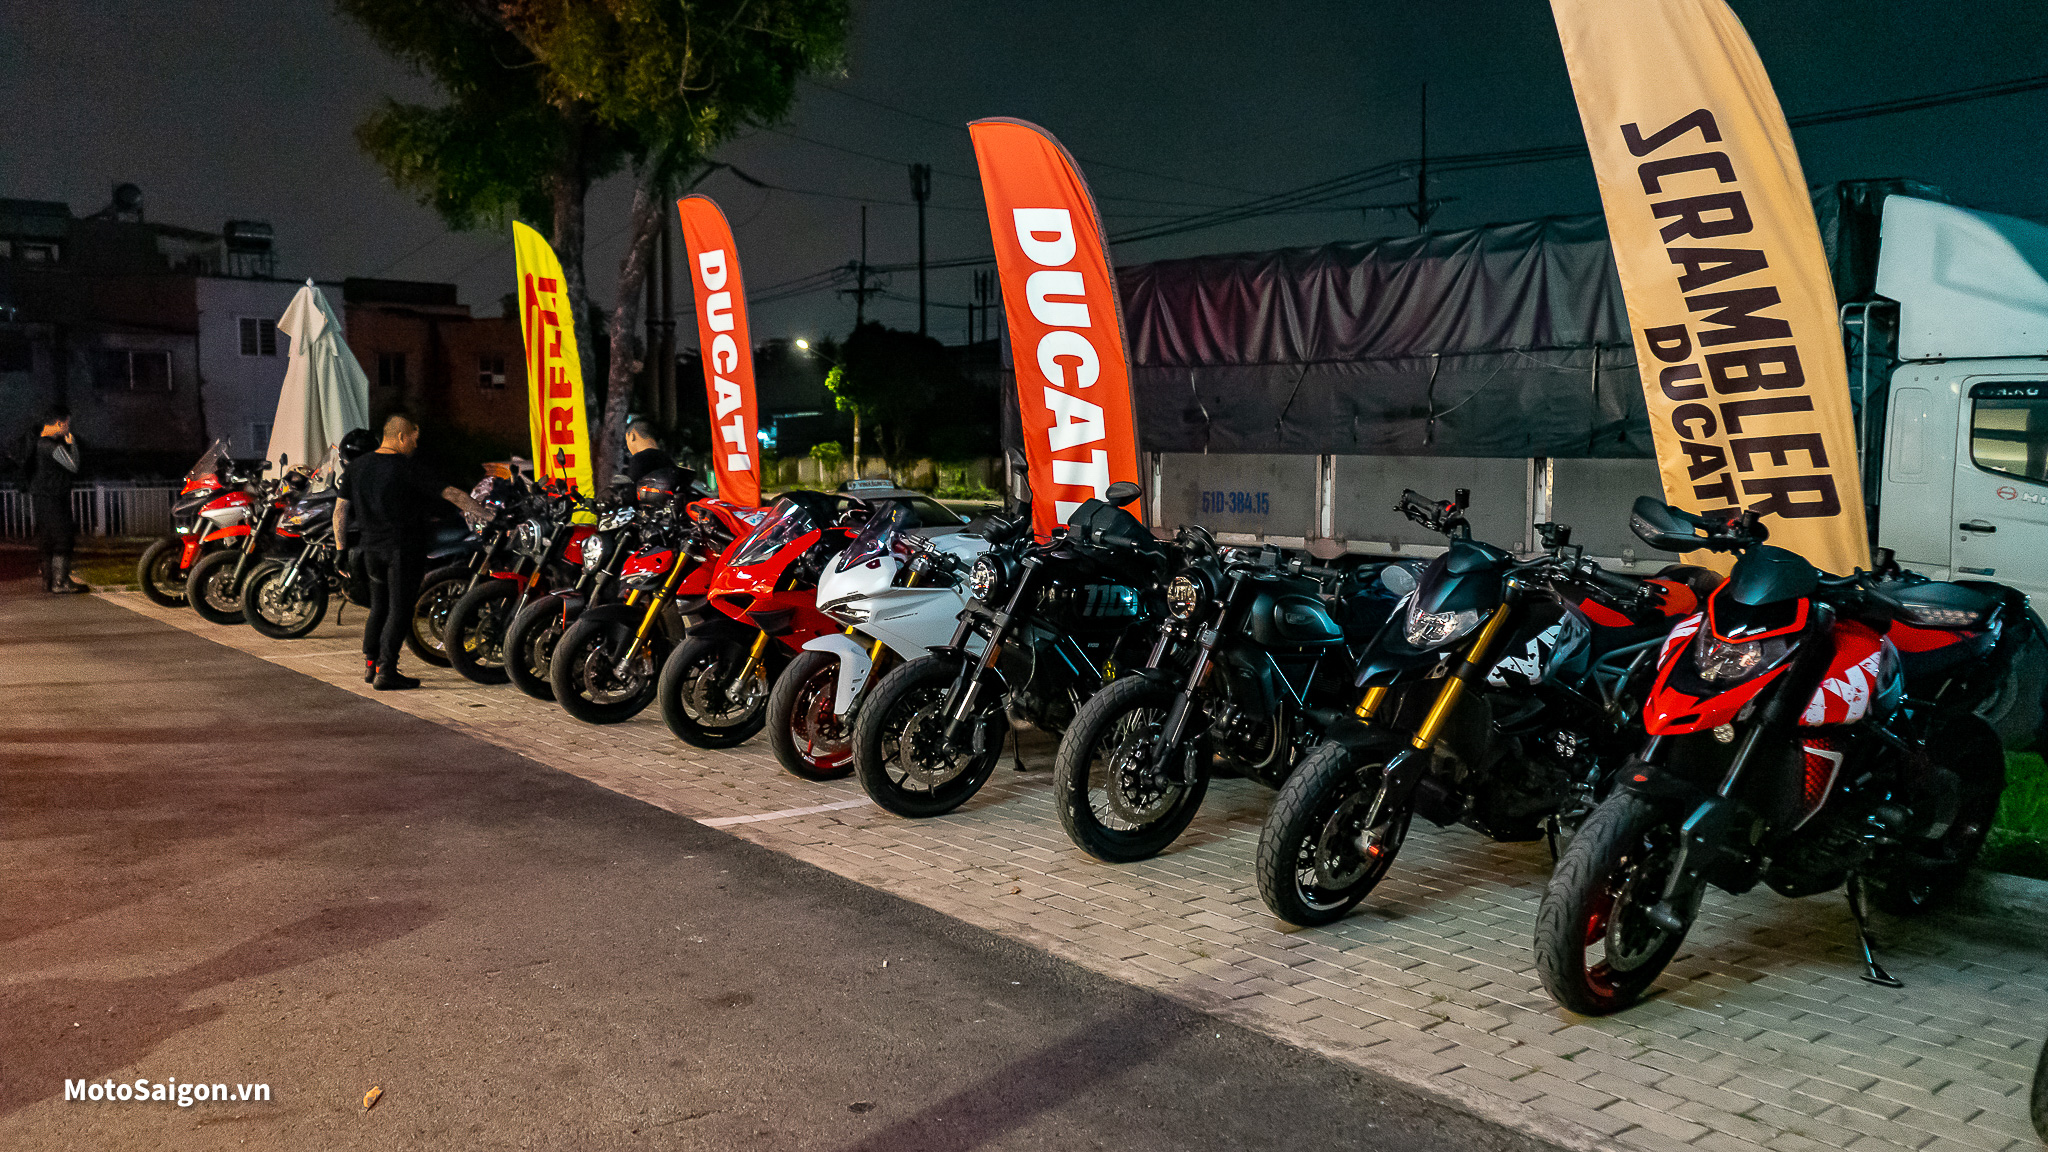 Toàn cảnh Chuyến đi Ducati Glamping Tour tại Đà Lạt của các D.O.C. Vietnam